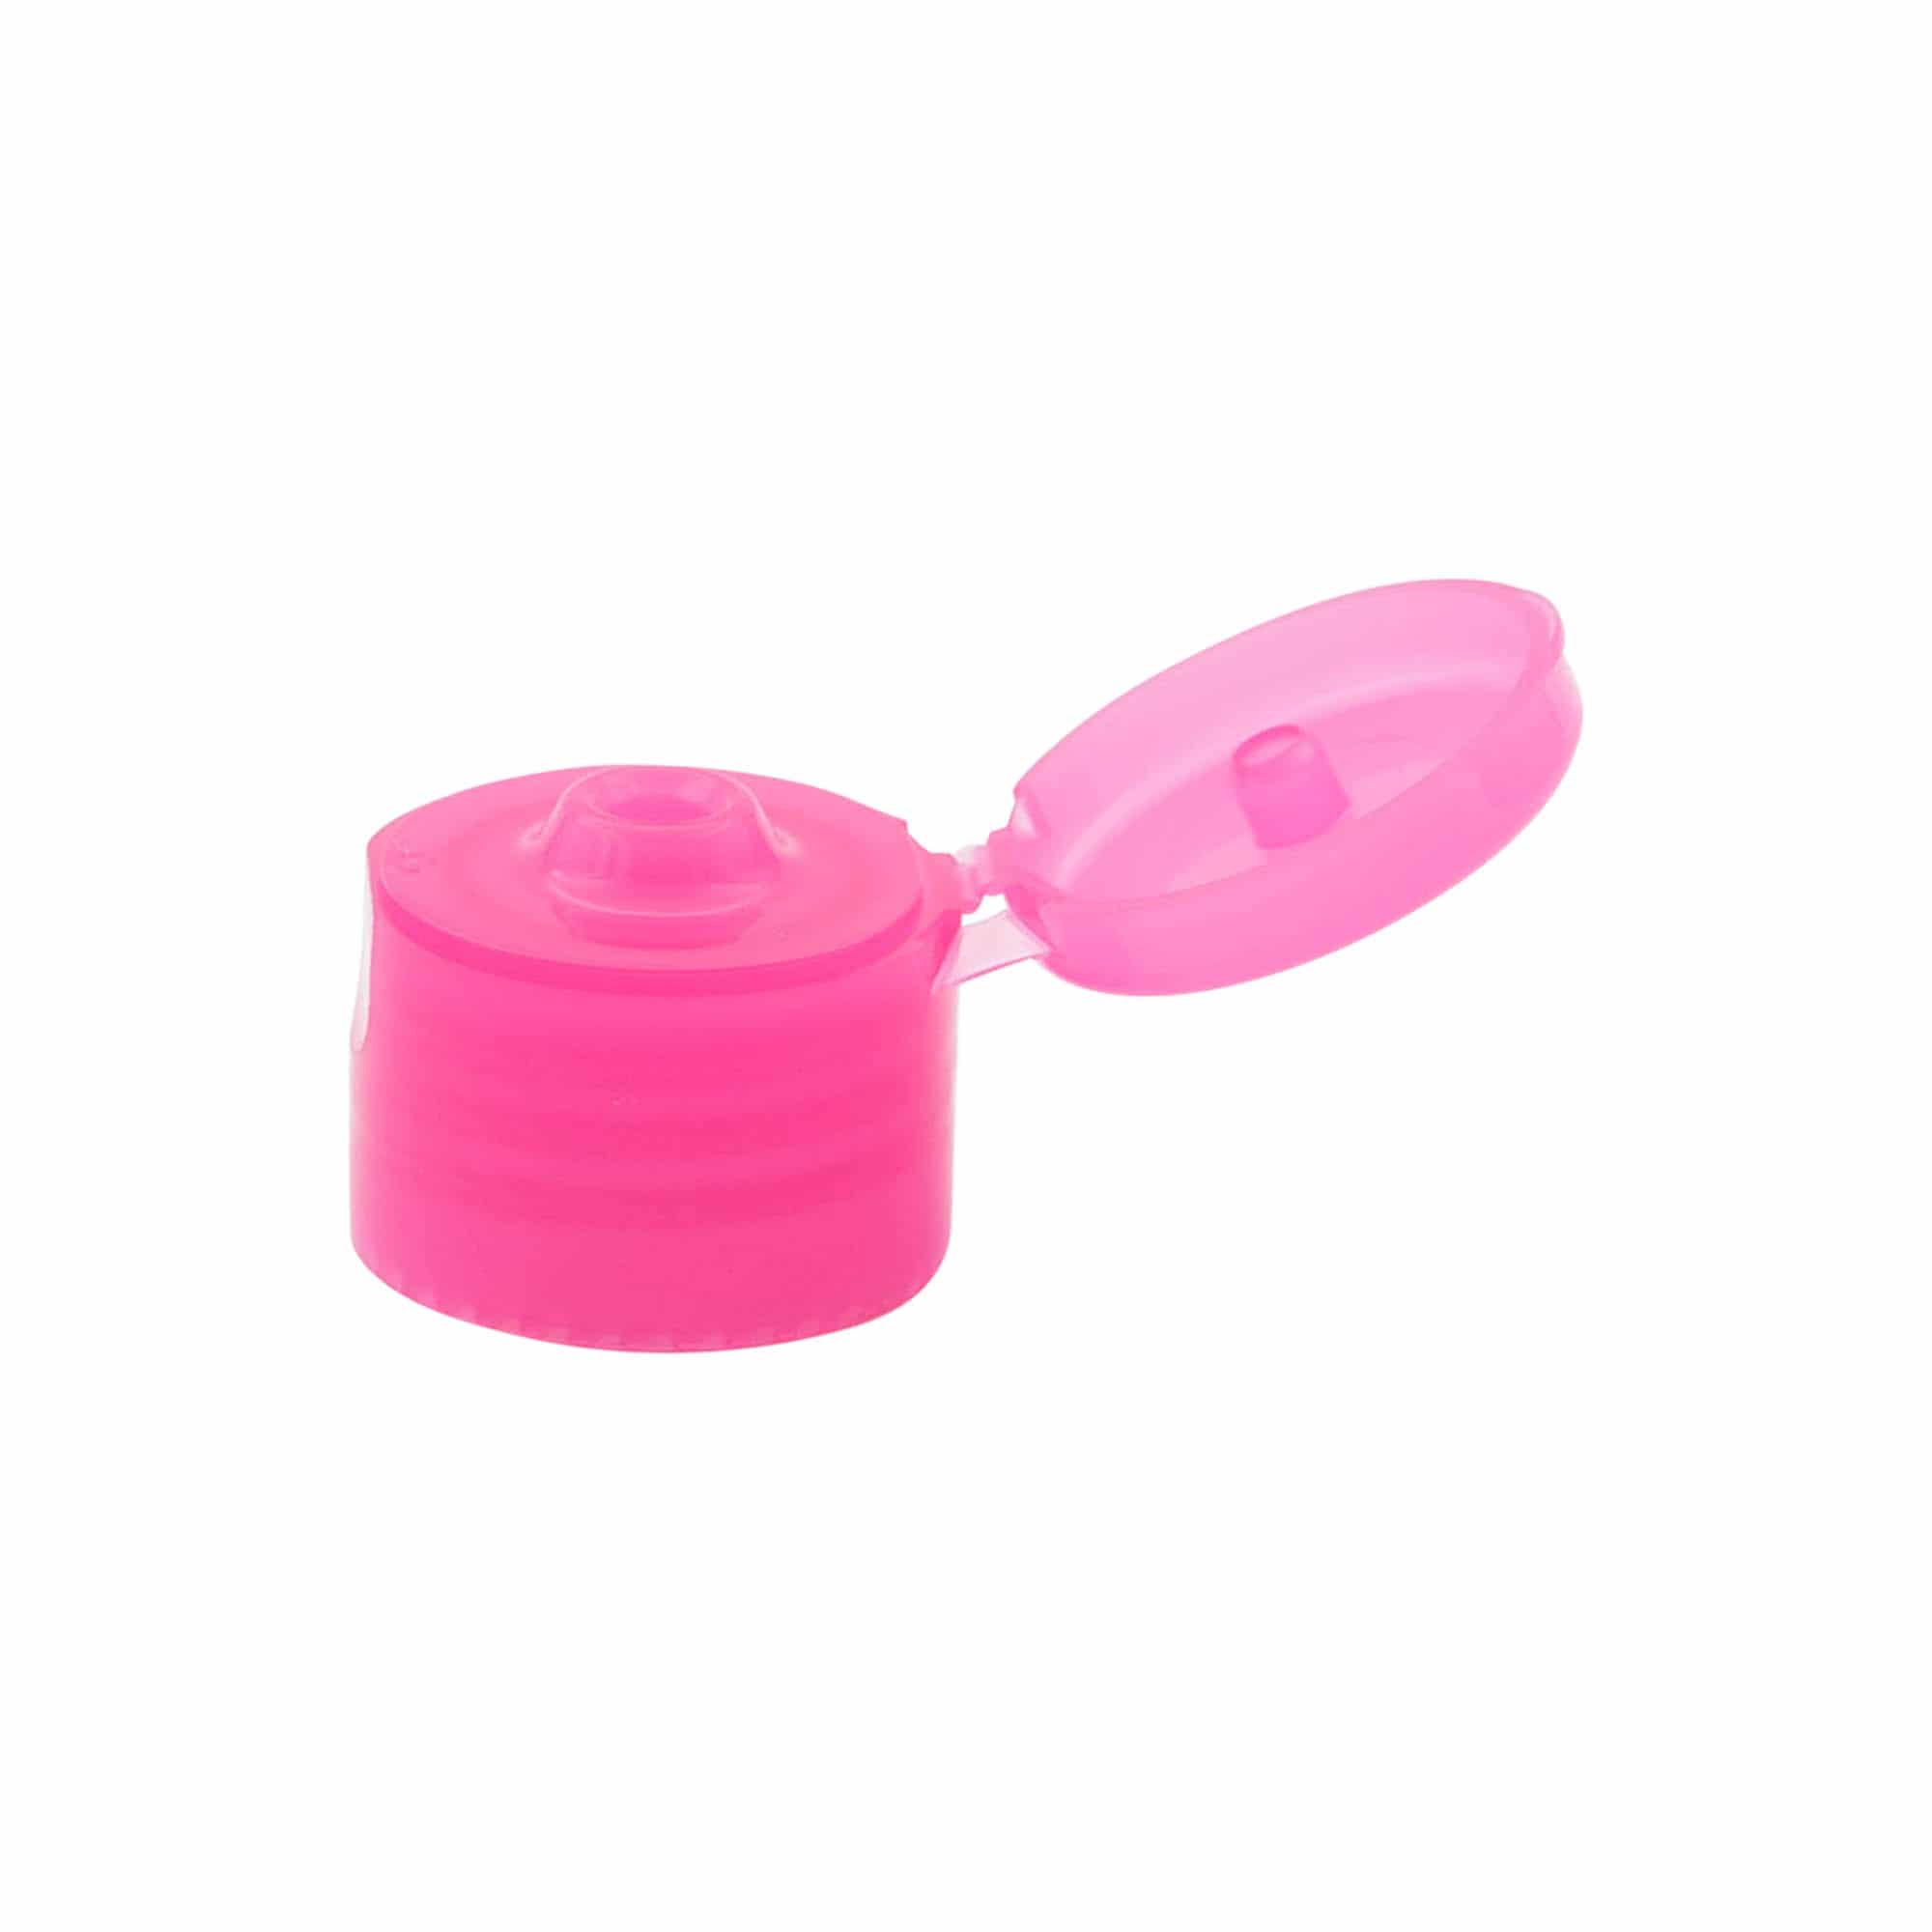 Šroubovací uzávěr s výklopnou krytkou, plast PP, růžový, pro ústí: GPI 24/410